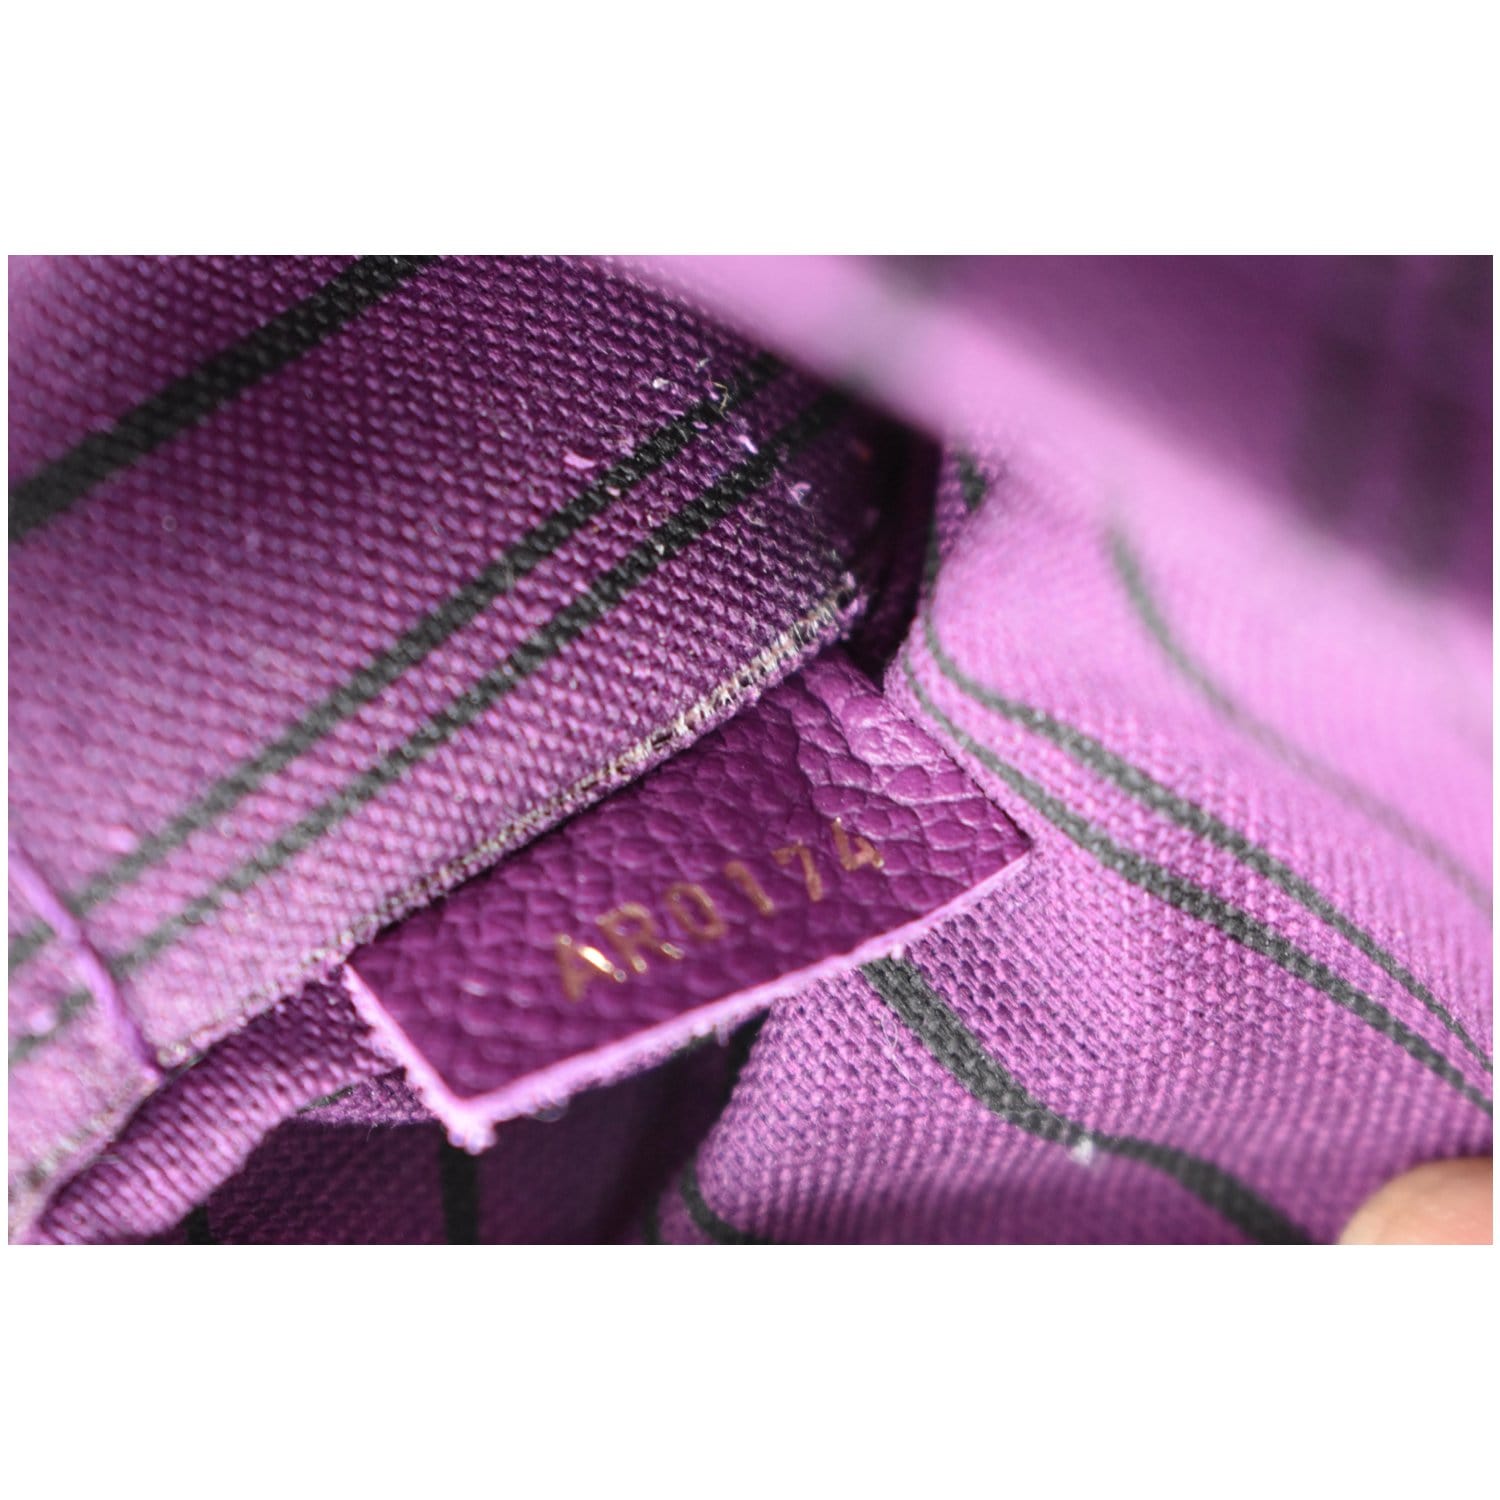 Louis Vuitton Amytheste Empreinte Leather Shoulder Strap Louis